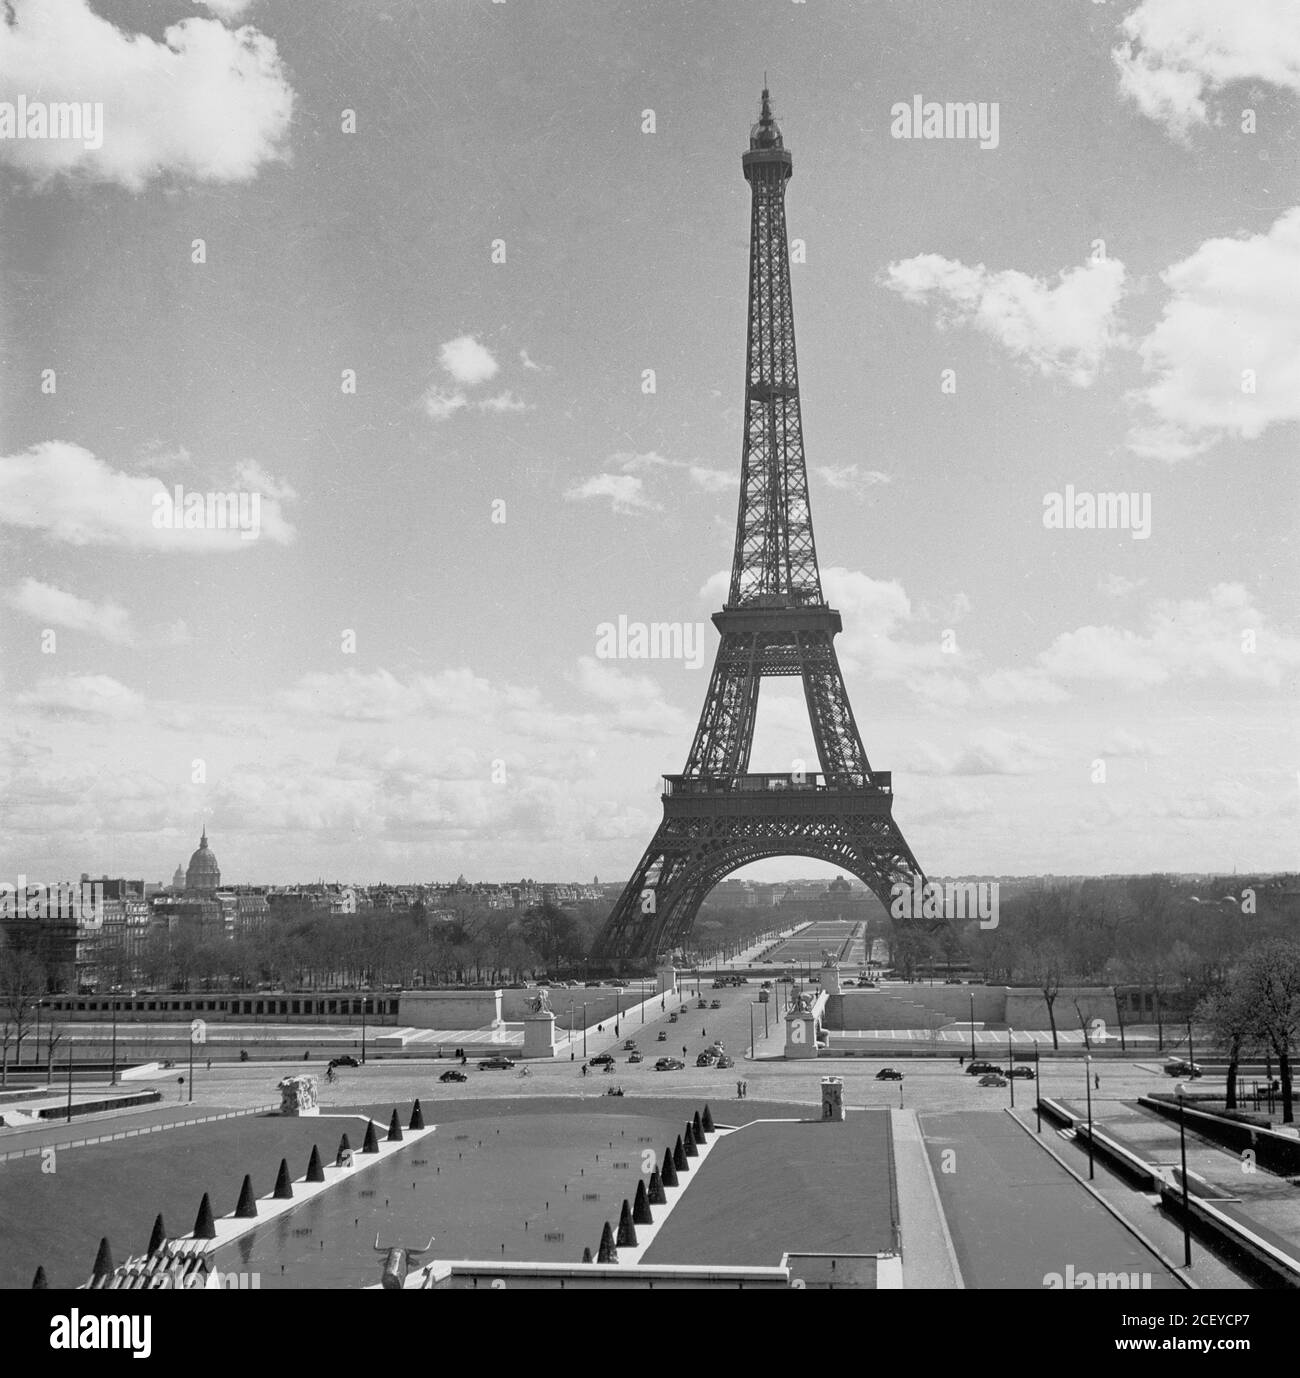 1950er Jahre, der ionische Eiffelturm, ein schmiedeeiserner Turm, 300 Meter hoch, erbaut 1889 in Champ de Mars, Paris, Frankreich für die L'Exposition Universelle. Das Bild zeigt die Skyline der Stadt in dieser Zeit und zeigt die unglaubliche Höhe des Turms und seine dominierende Präsenz über der Stadt. Stockfoto